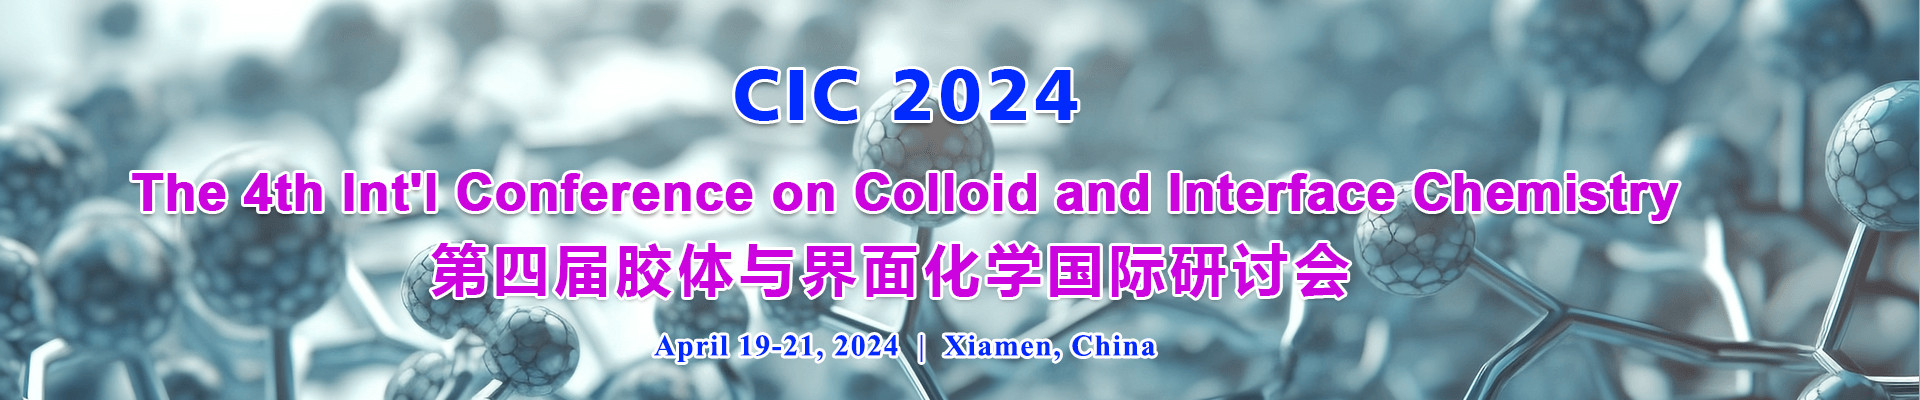 第四届胶体与界面化学国际研讨会会(CIC 2024)